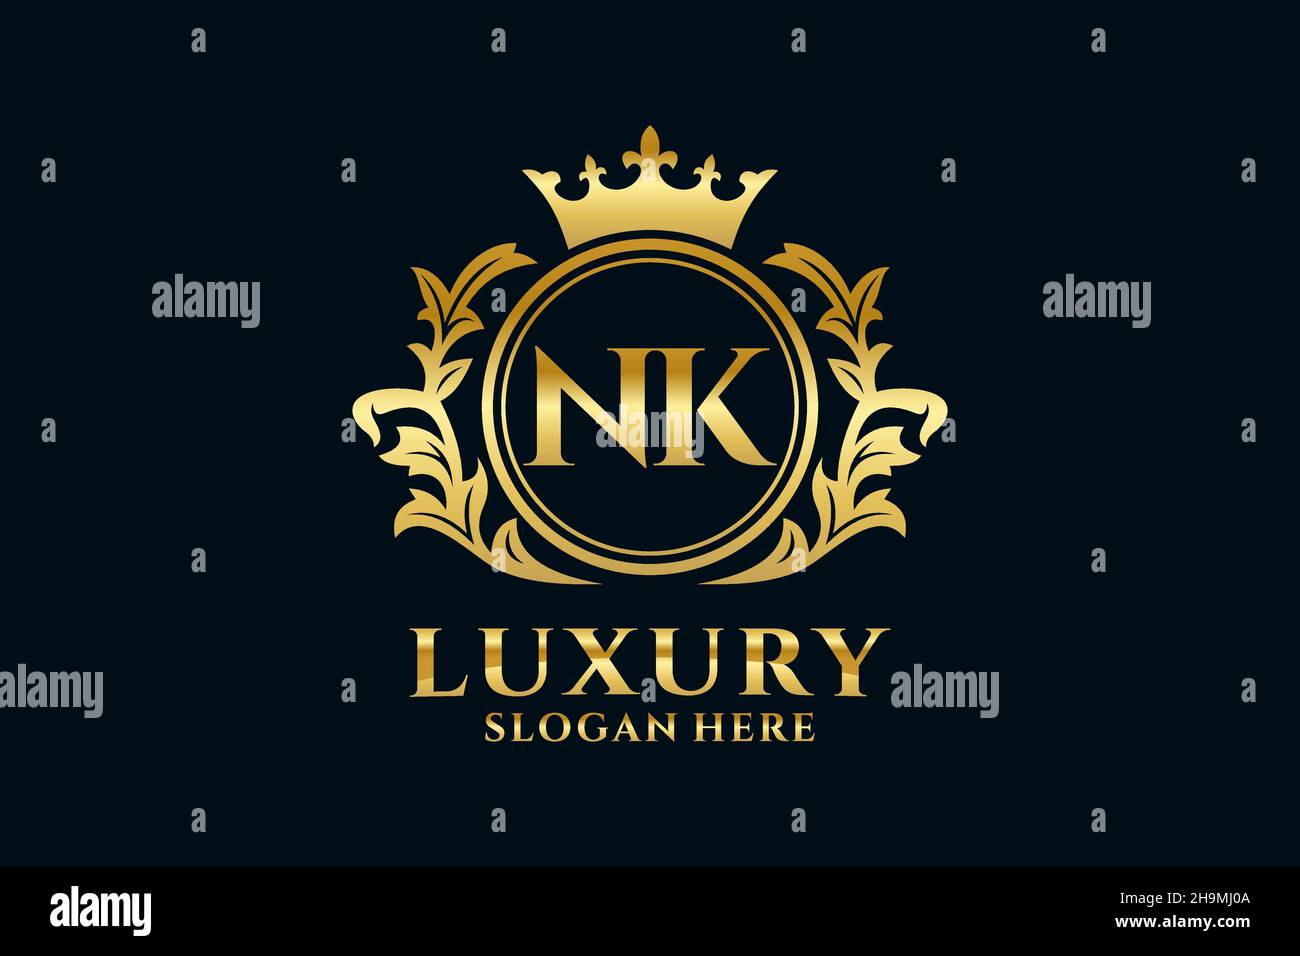 Nk letter logo Banque d'images noir et blanc - Page 2 - Alamy